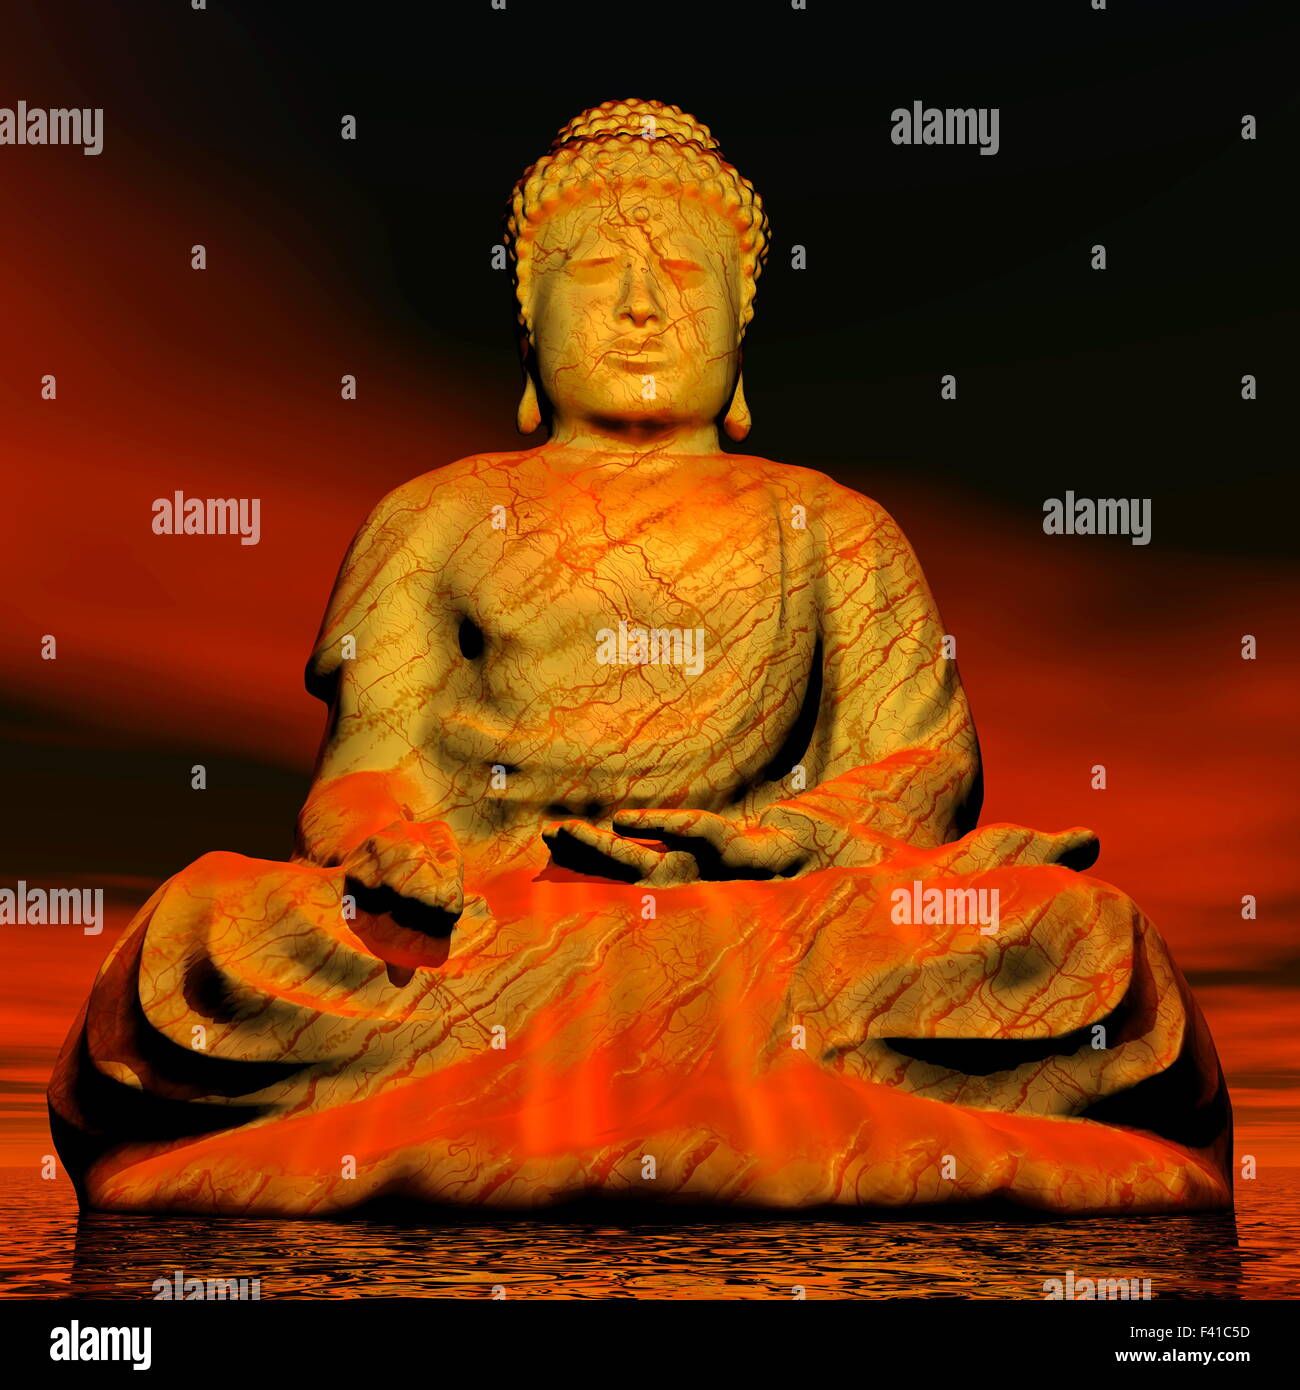 Bouddha : 1 656 782 images, photos de stock, objets 3D et images